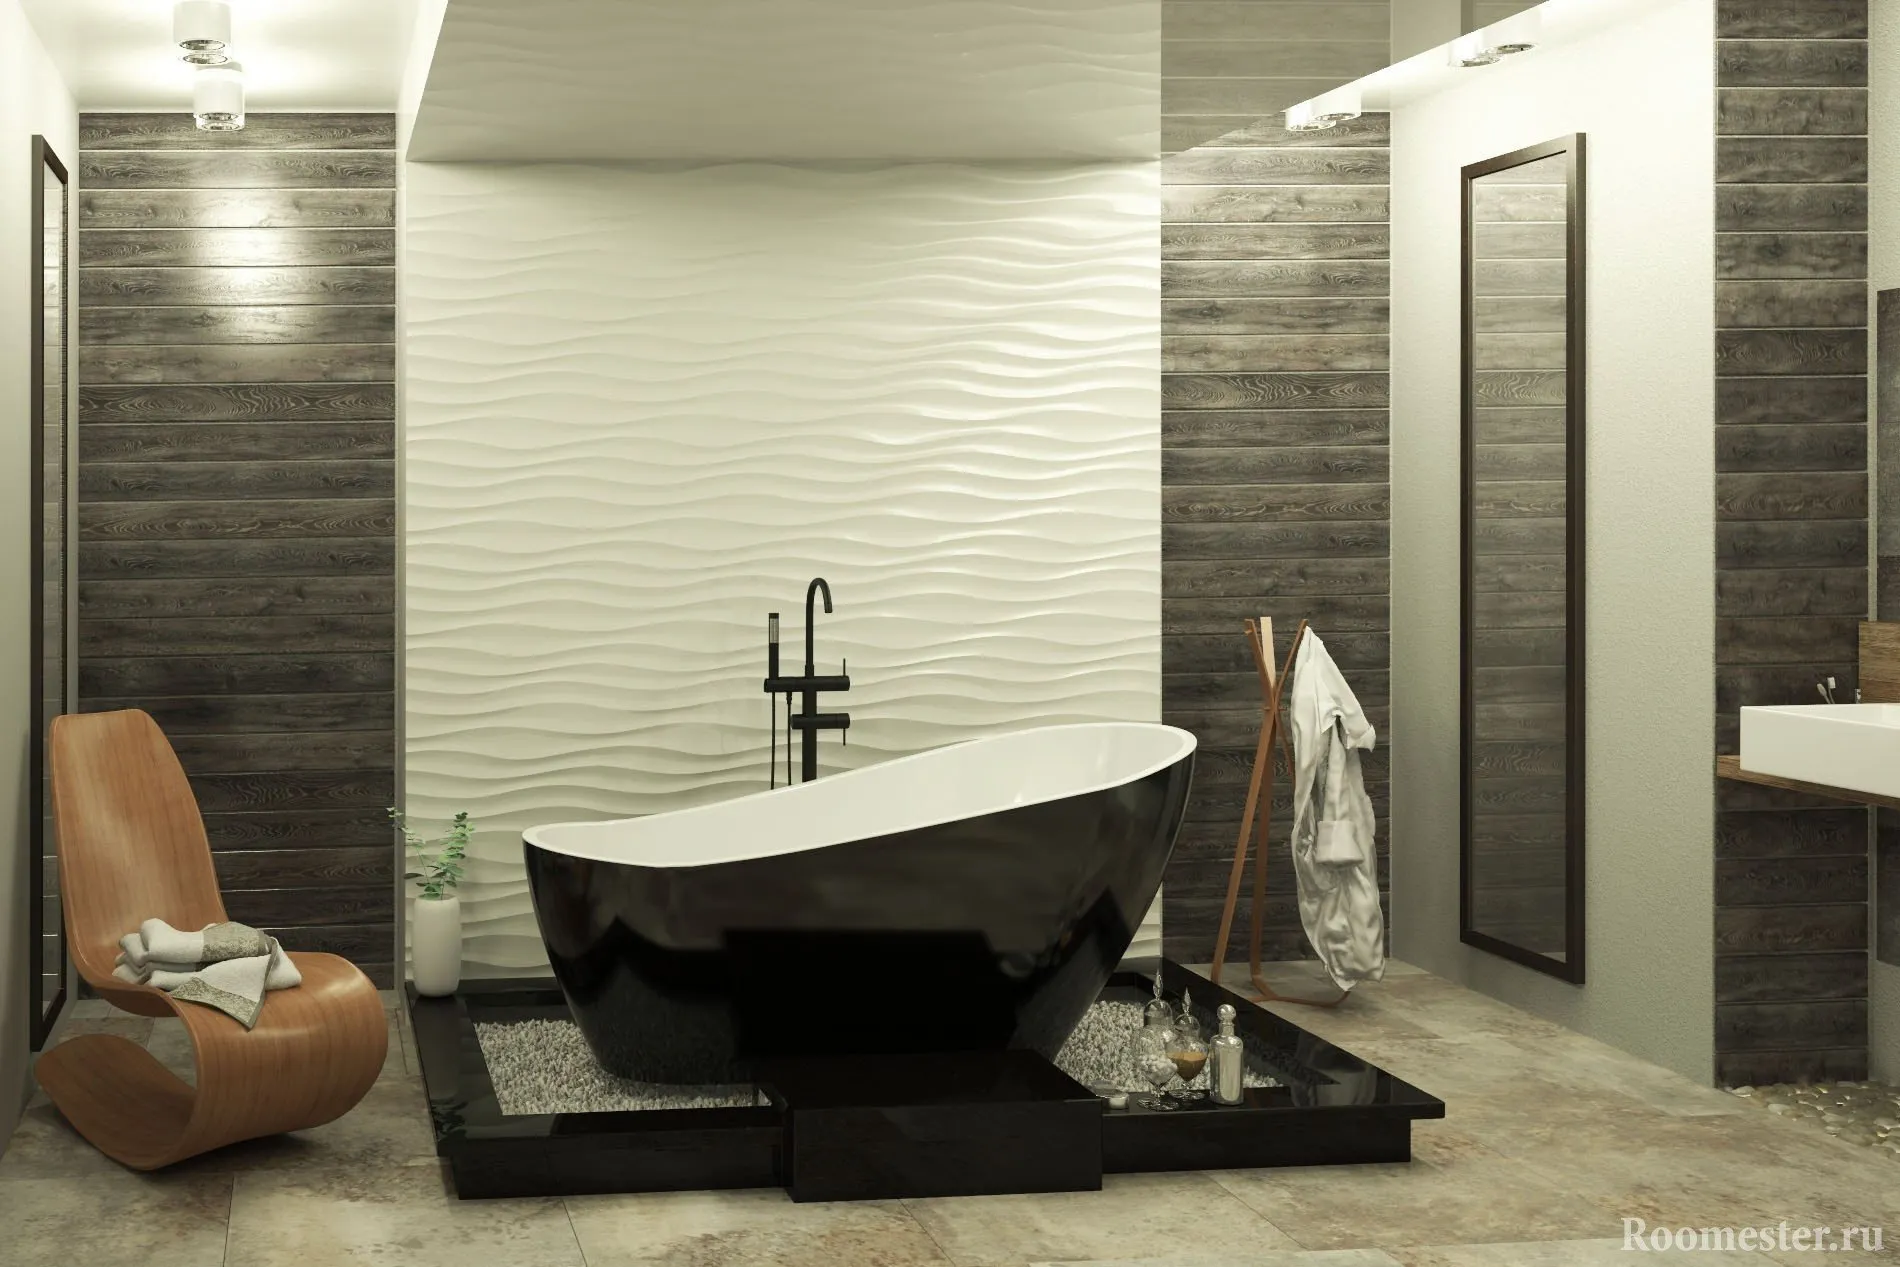 Отделка пвх плиткой. Porcelanosa 3d плитка. Отделочные панели для ванной комнаты. Отделка стен в ванной комнате. Декоративные панели в ванную комнату.